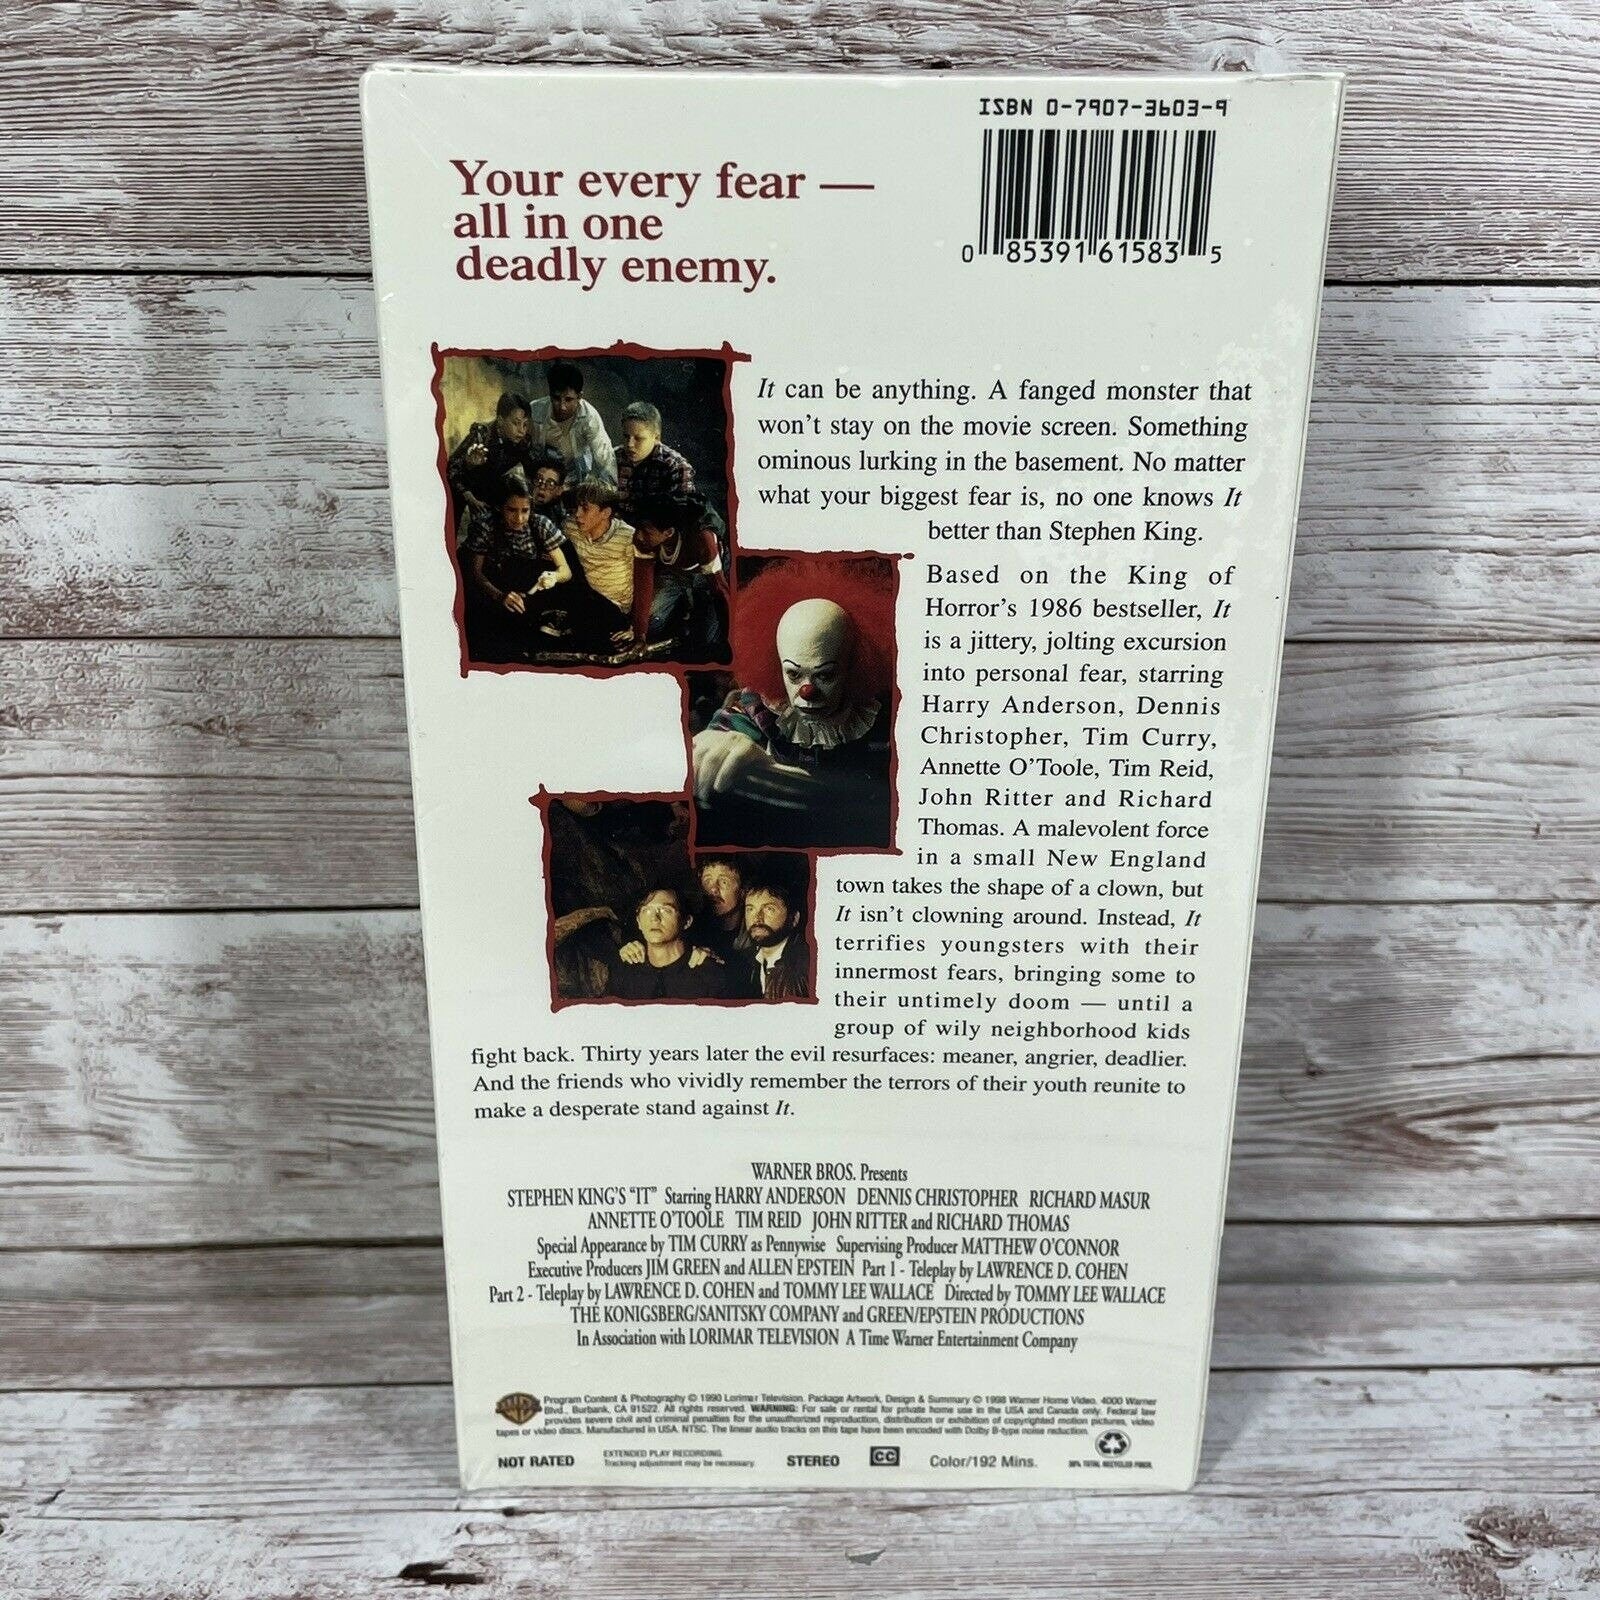 VTG Stephen King's: IT (VHS) John Ritter Not Rated 1990 16158 Sealed New Horror